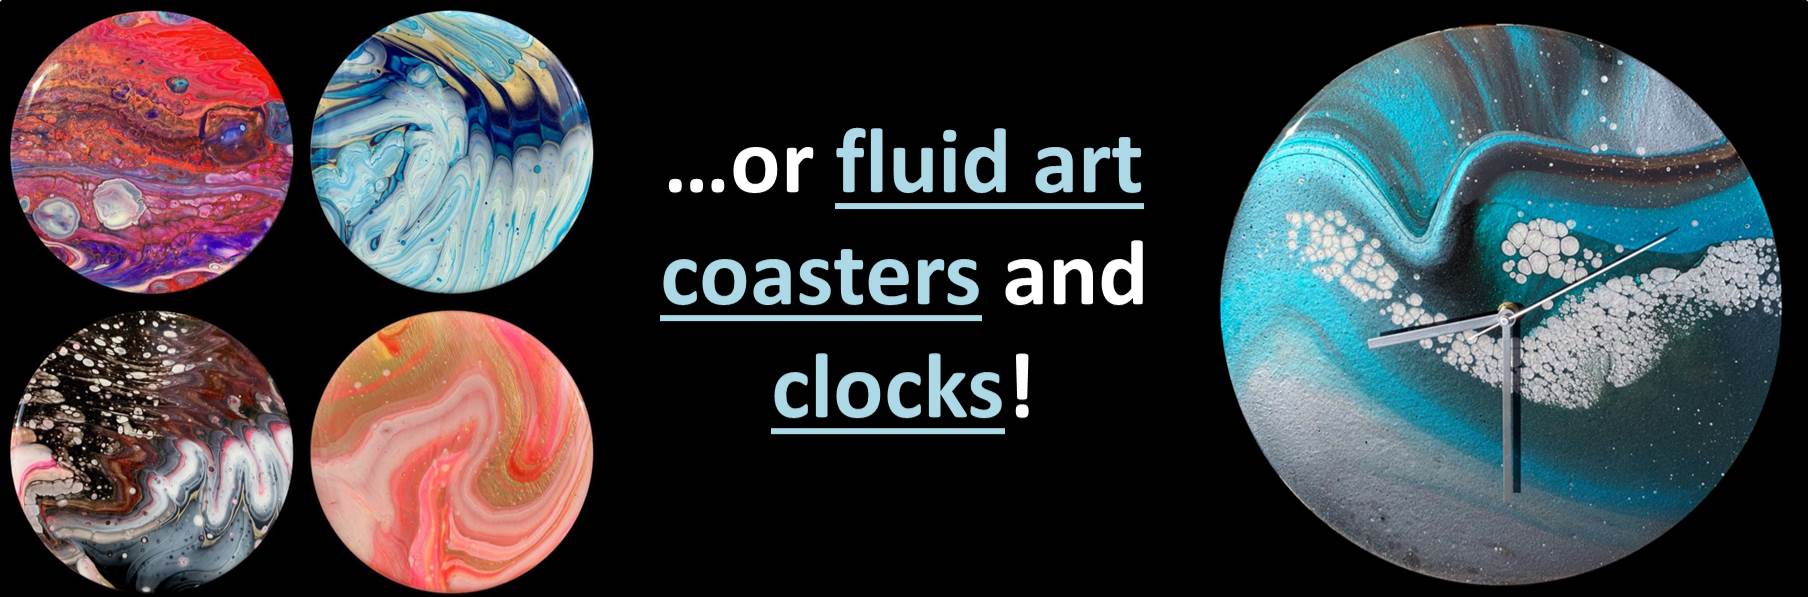 or fluid art coasters!